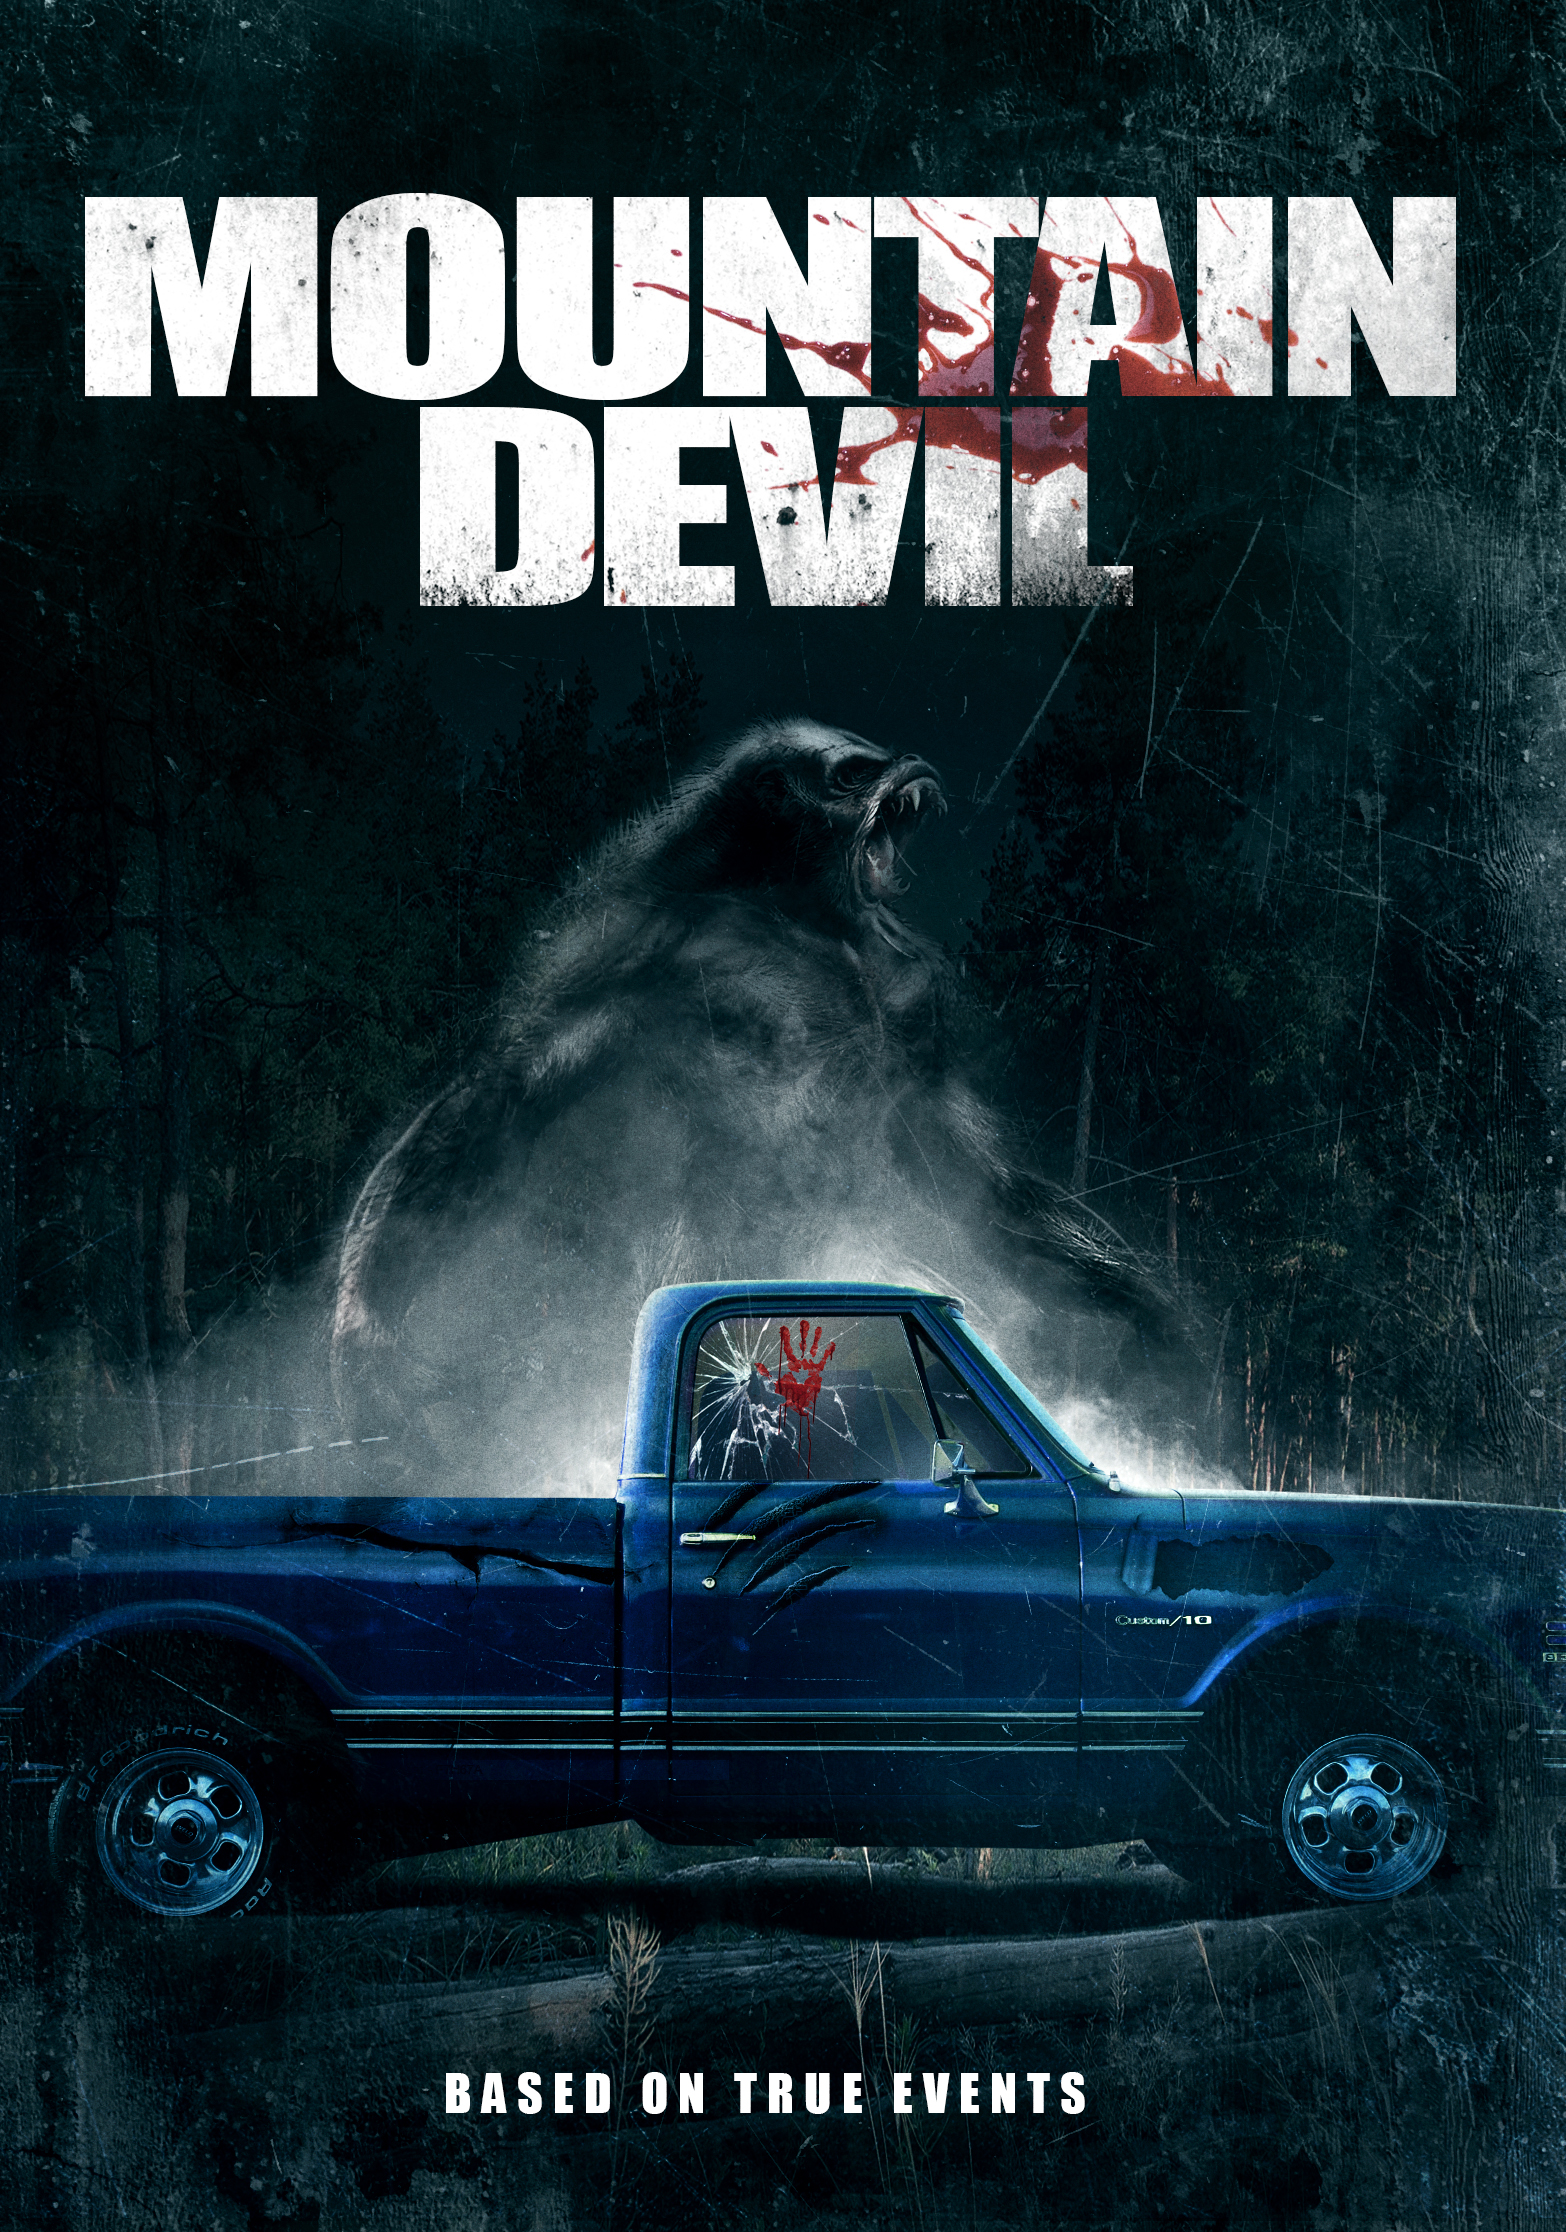 ดูหนังออนไลน์ฟรี Mountain Devil (2017)